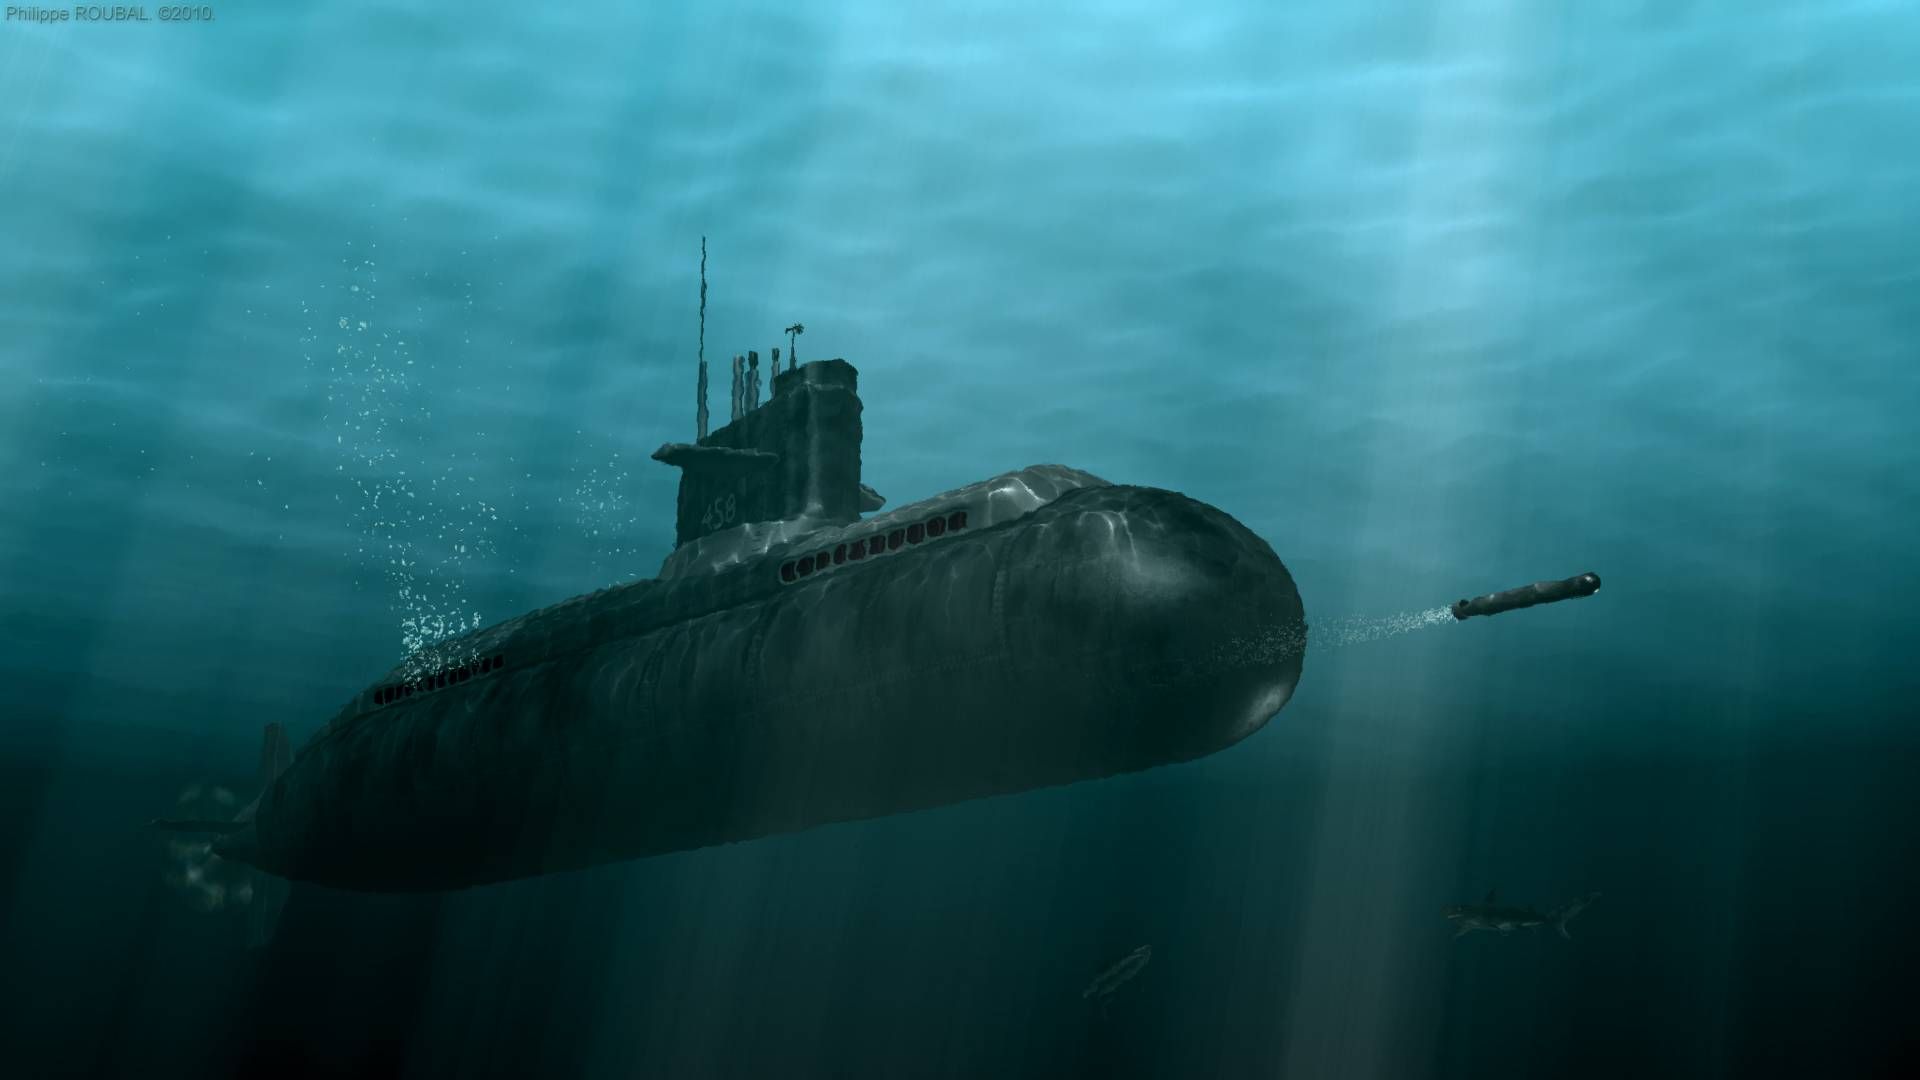 Подводный корабль. Подводная лодка. Подлодка под водой. Корабли и подводные лодки. Российская подводная лодка под водой.